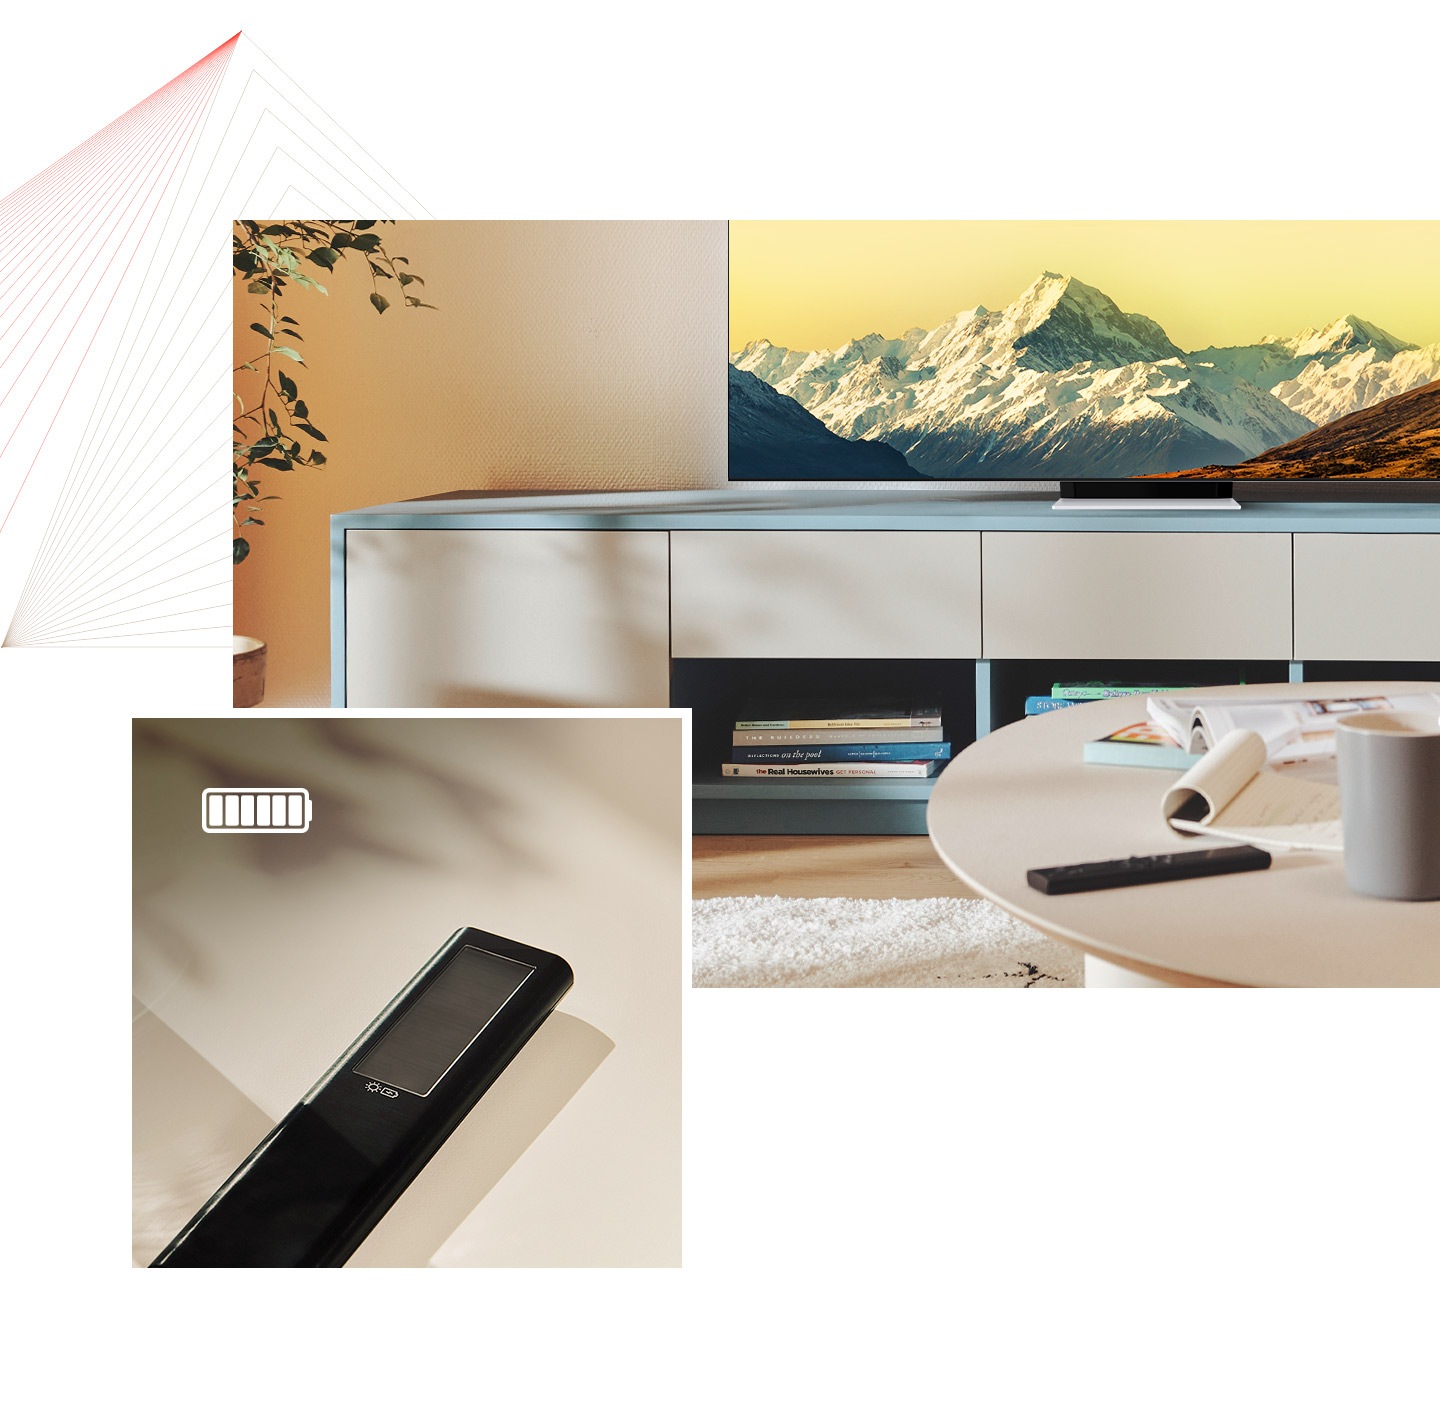 Først er SolarCell Remote plassert på et bord i et lyst rom med Neo QLED. Deretter vises et nærbilde av SolarCell Remote med et fulladet batterisymbol.